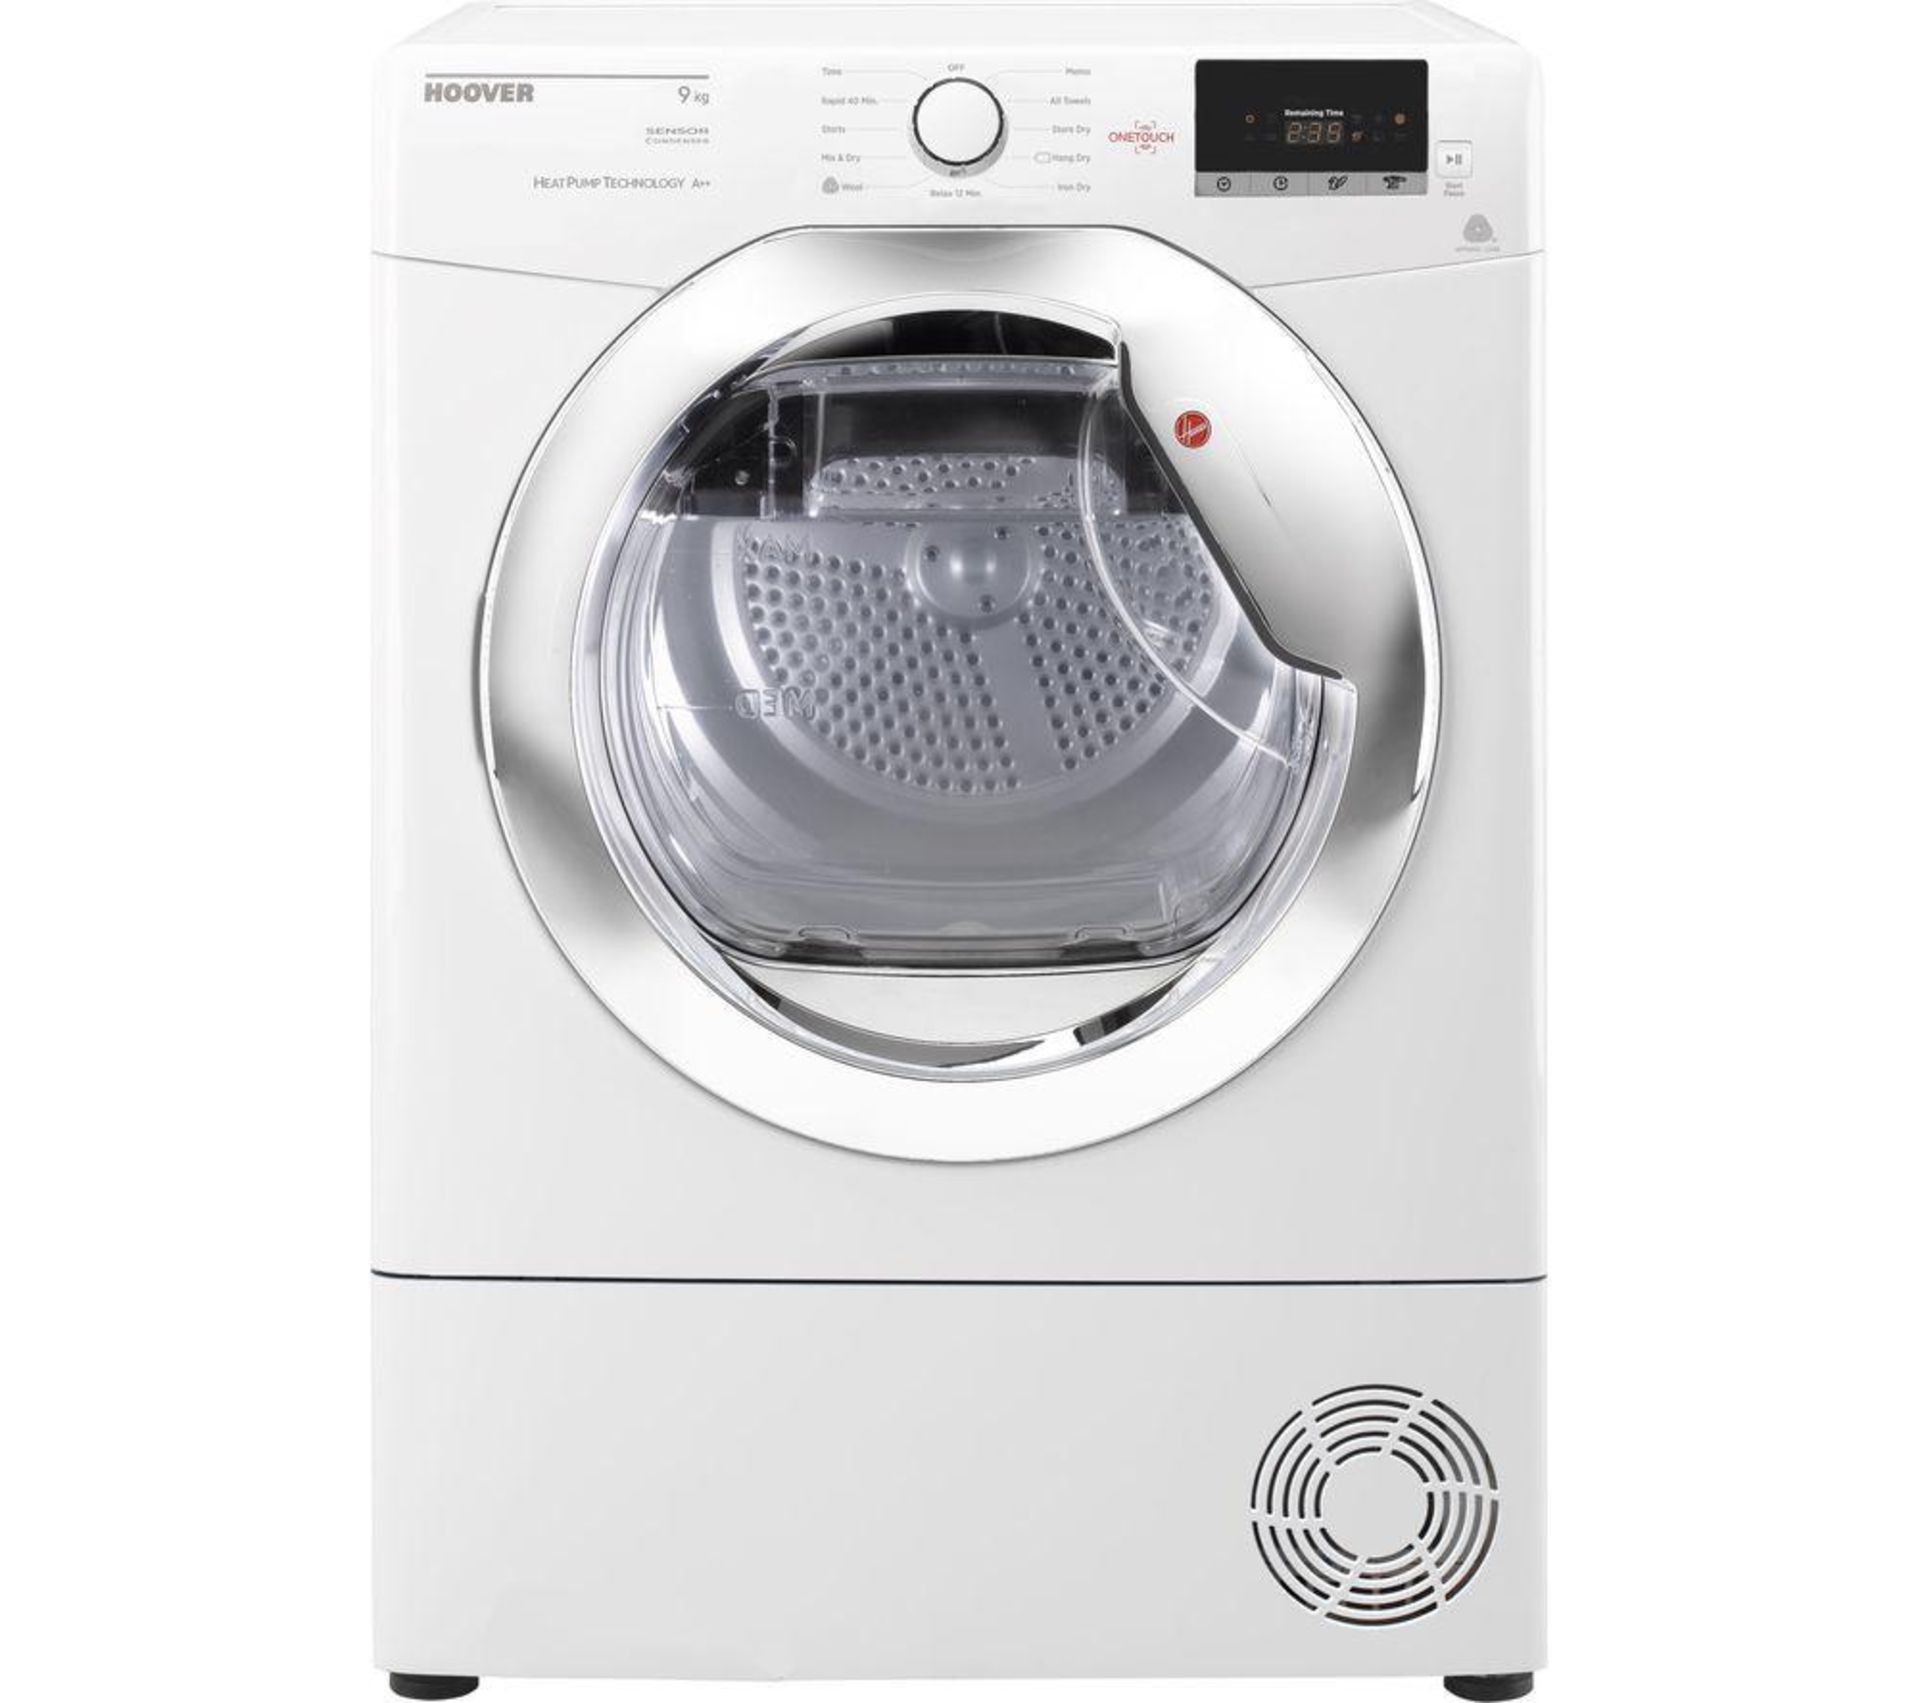 Mixed Lot of Nine Refurbished Appliances including Hoover 9KG Heat Pump Dryer, manufacturer’s - Image 8 of 8